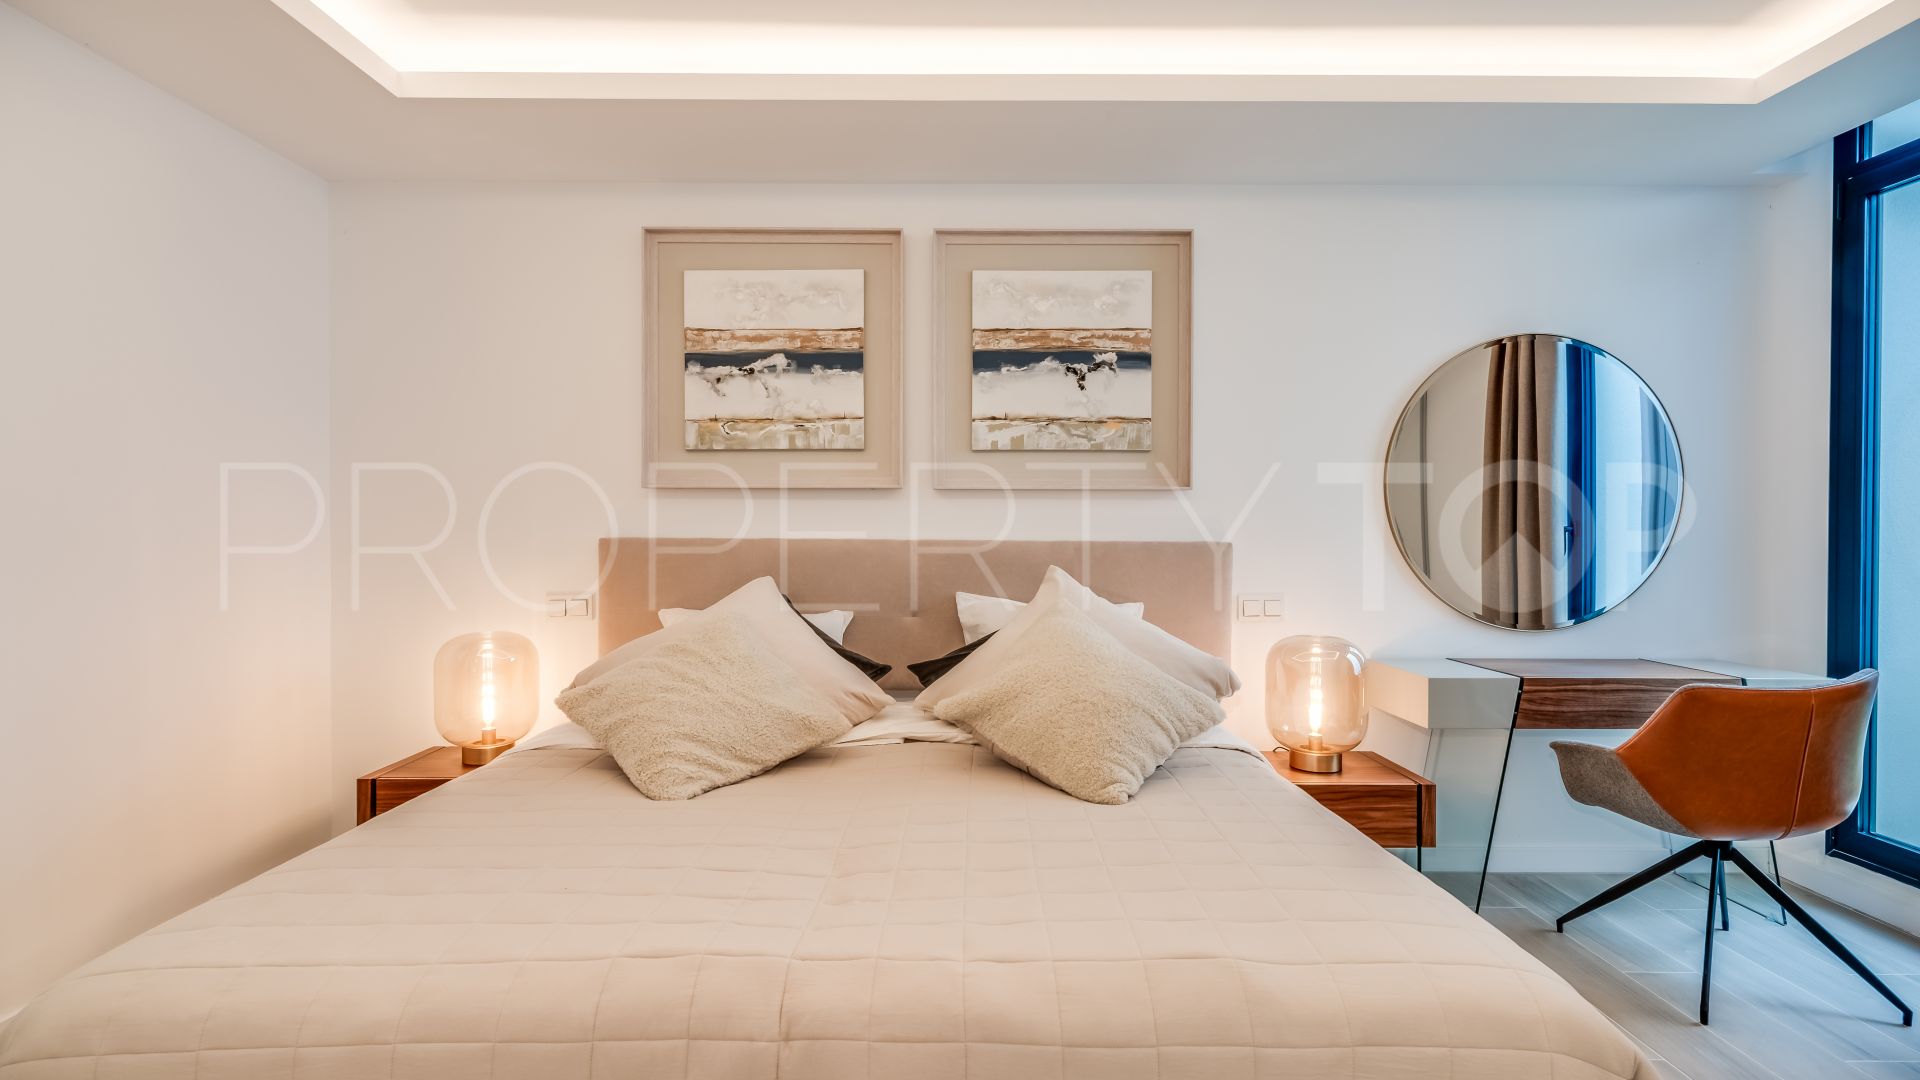 5 bedrooms villa in El Campanario for sale